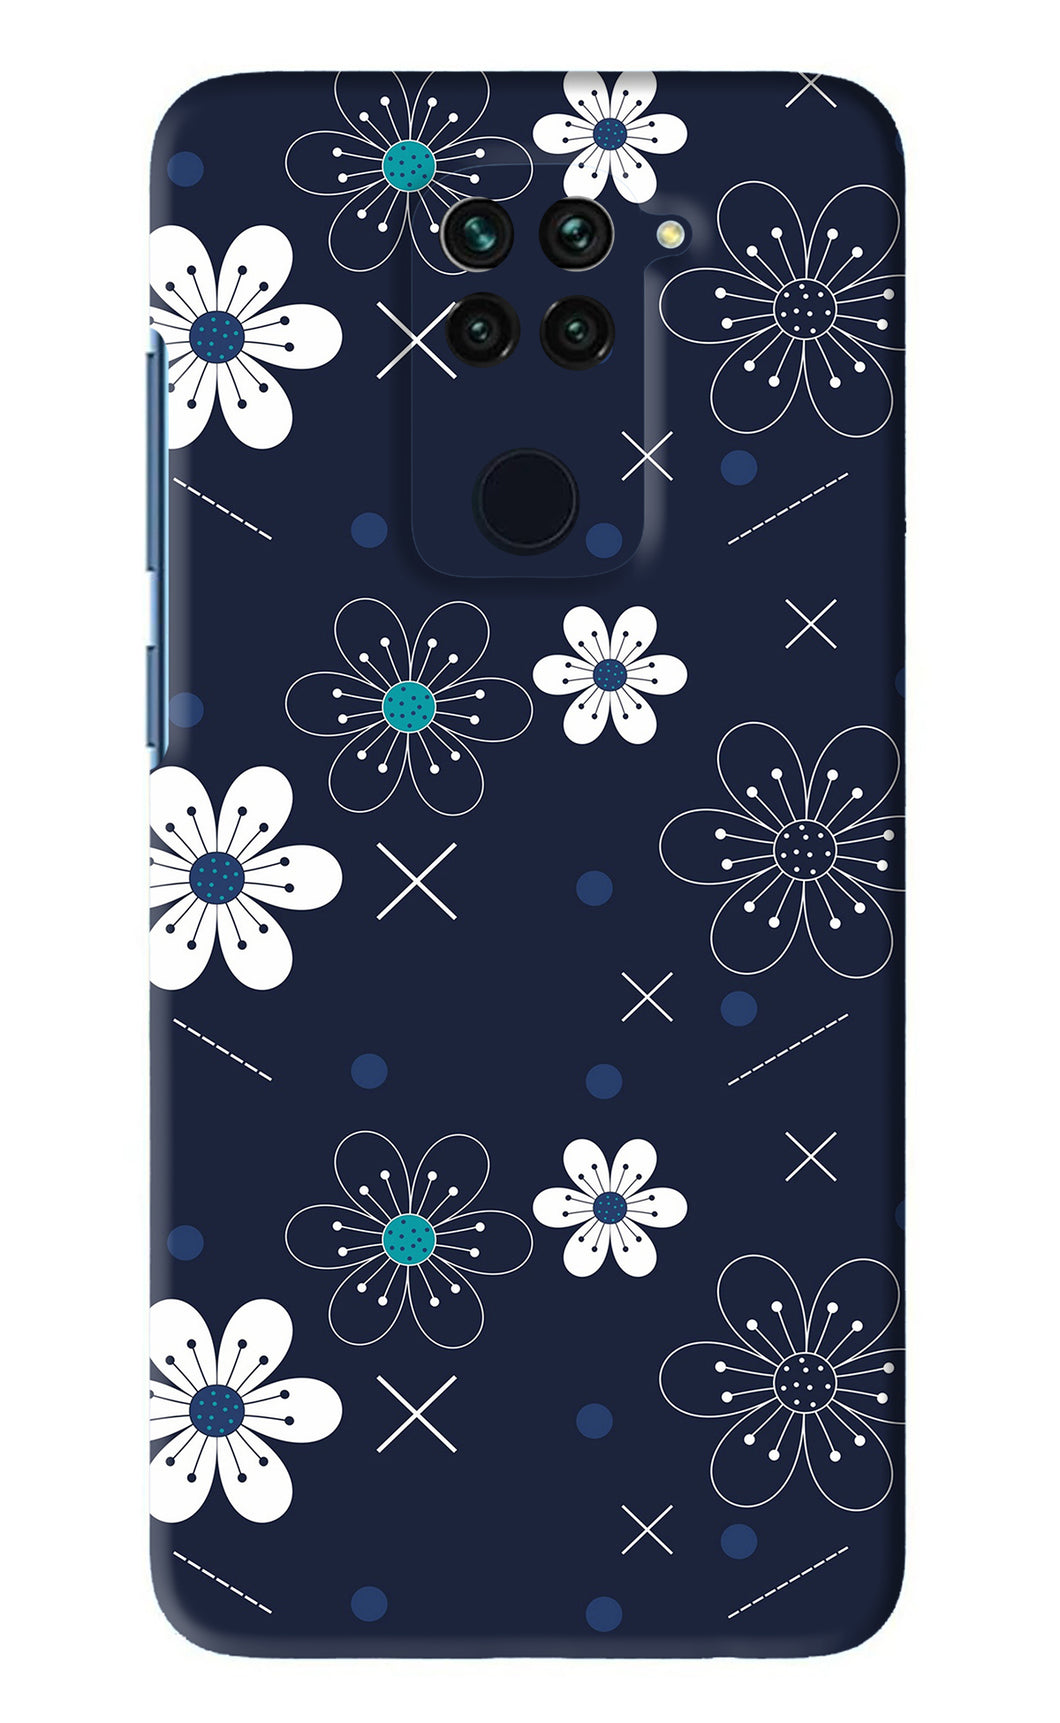 Flowers 4 Xiaomi Redmi Note 9 Back Skin Wrap